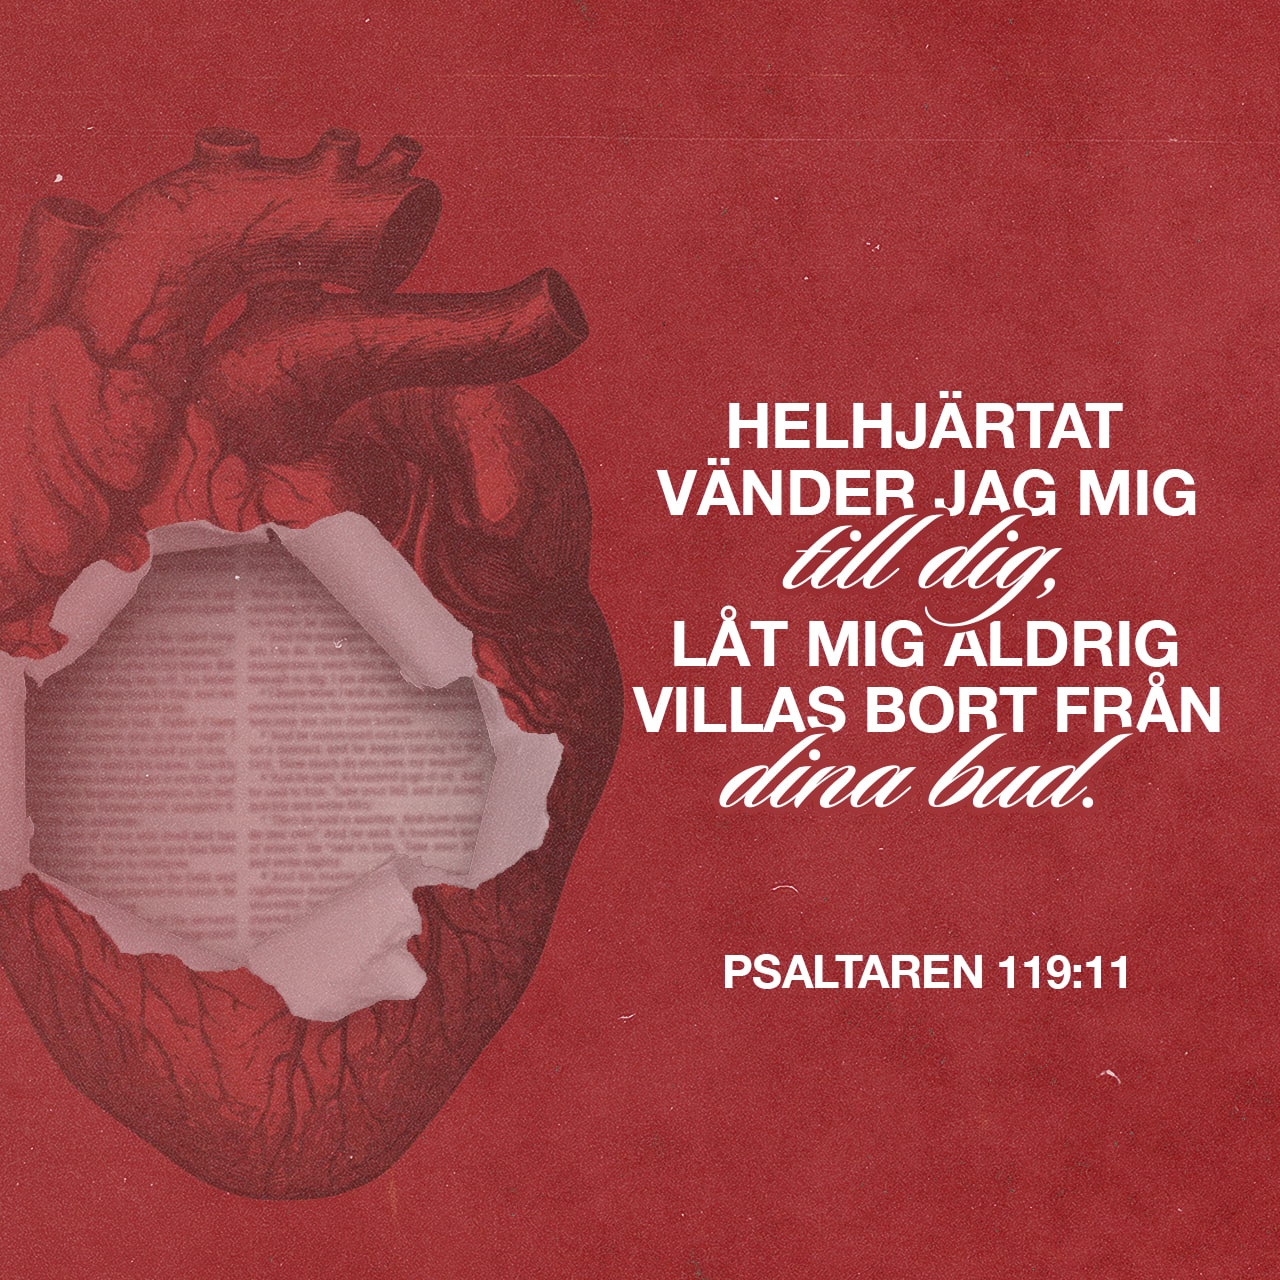 Psaltaren 119:11 - Jag gömmer ditt tal i mitt hjärta
för att jag inte skall synda mot dig.